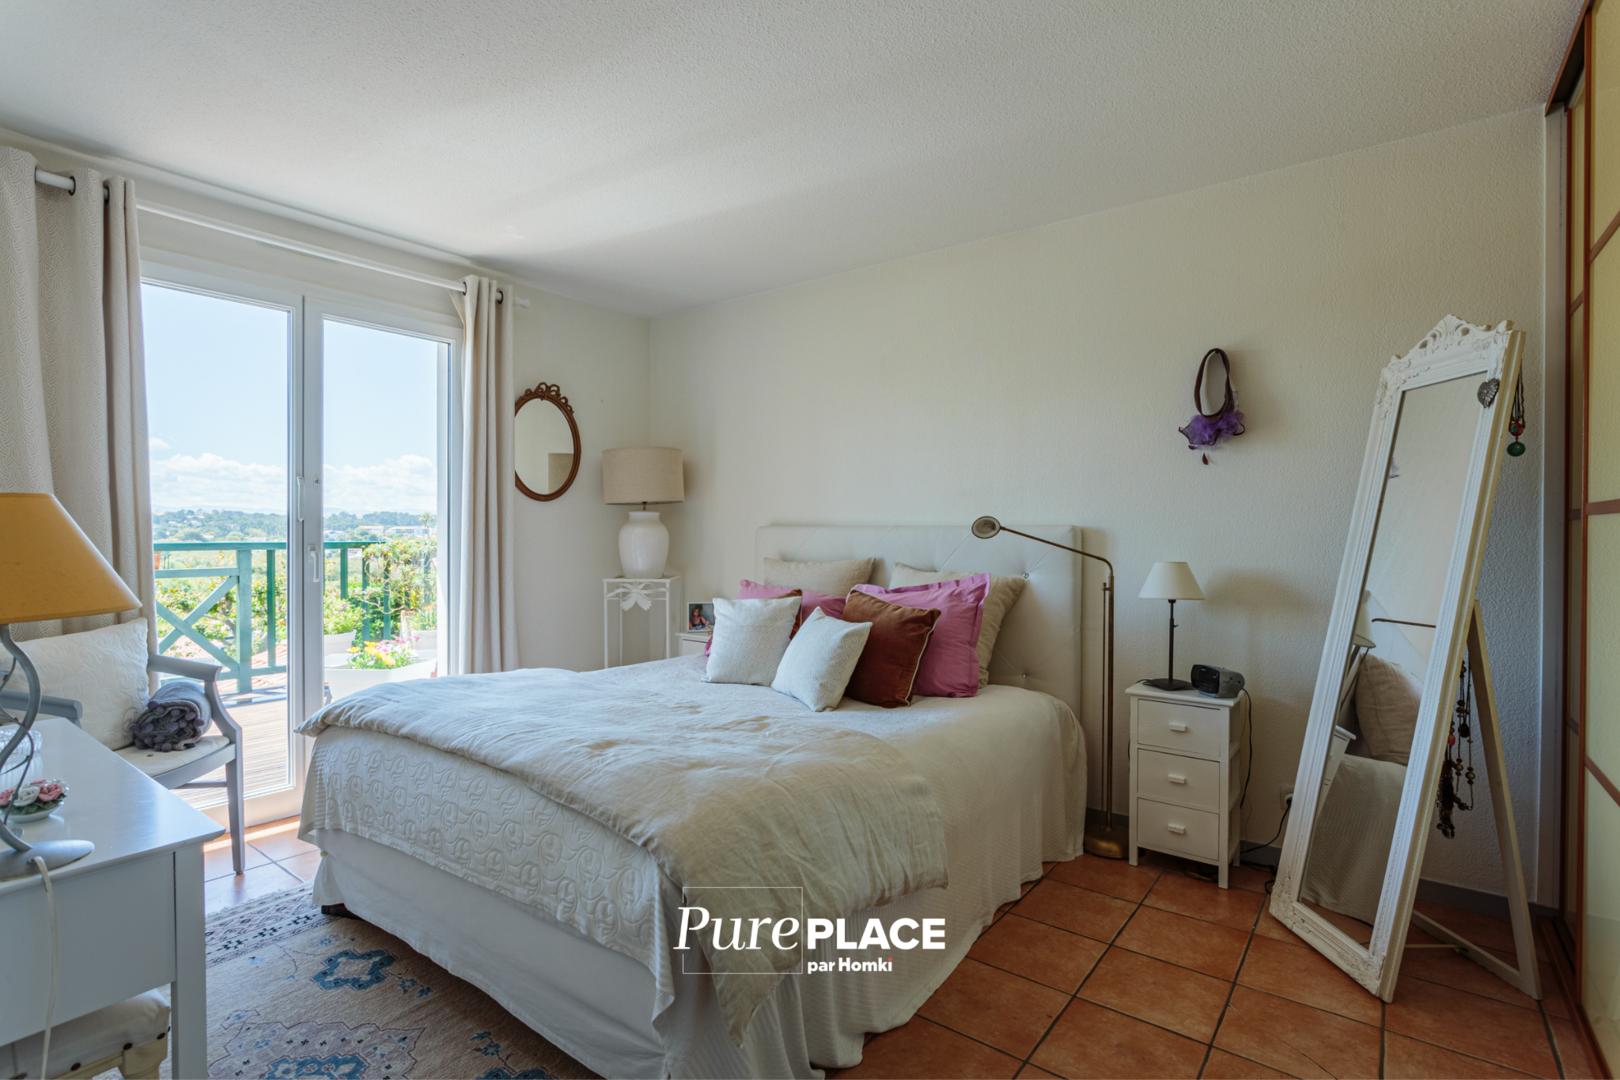 Homki - Vente Maison/villa  de 129.0 m² à Biarritz 64200